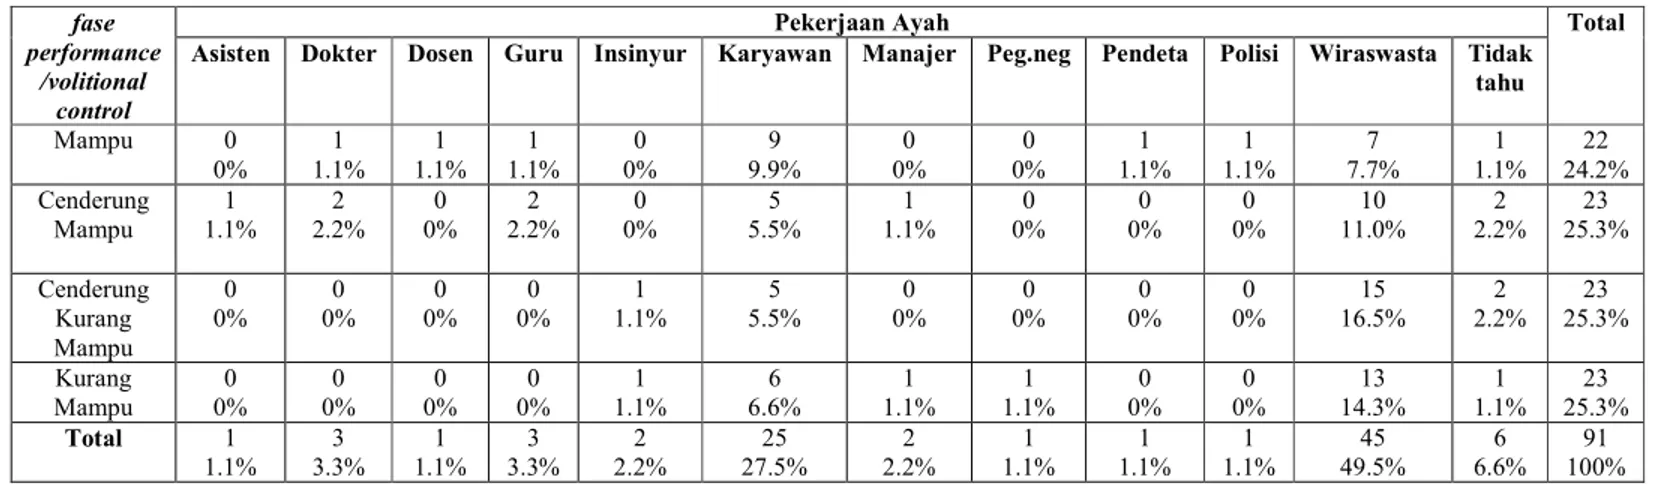 Tabel 4.2.2.27. Tabel persentase hasil tabulasi silang fase performance/volitional control  dengan  pekerjaan ayah  siswa kelas V Sekolah Dasar “X” Bandung  